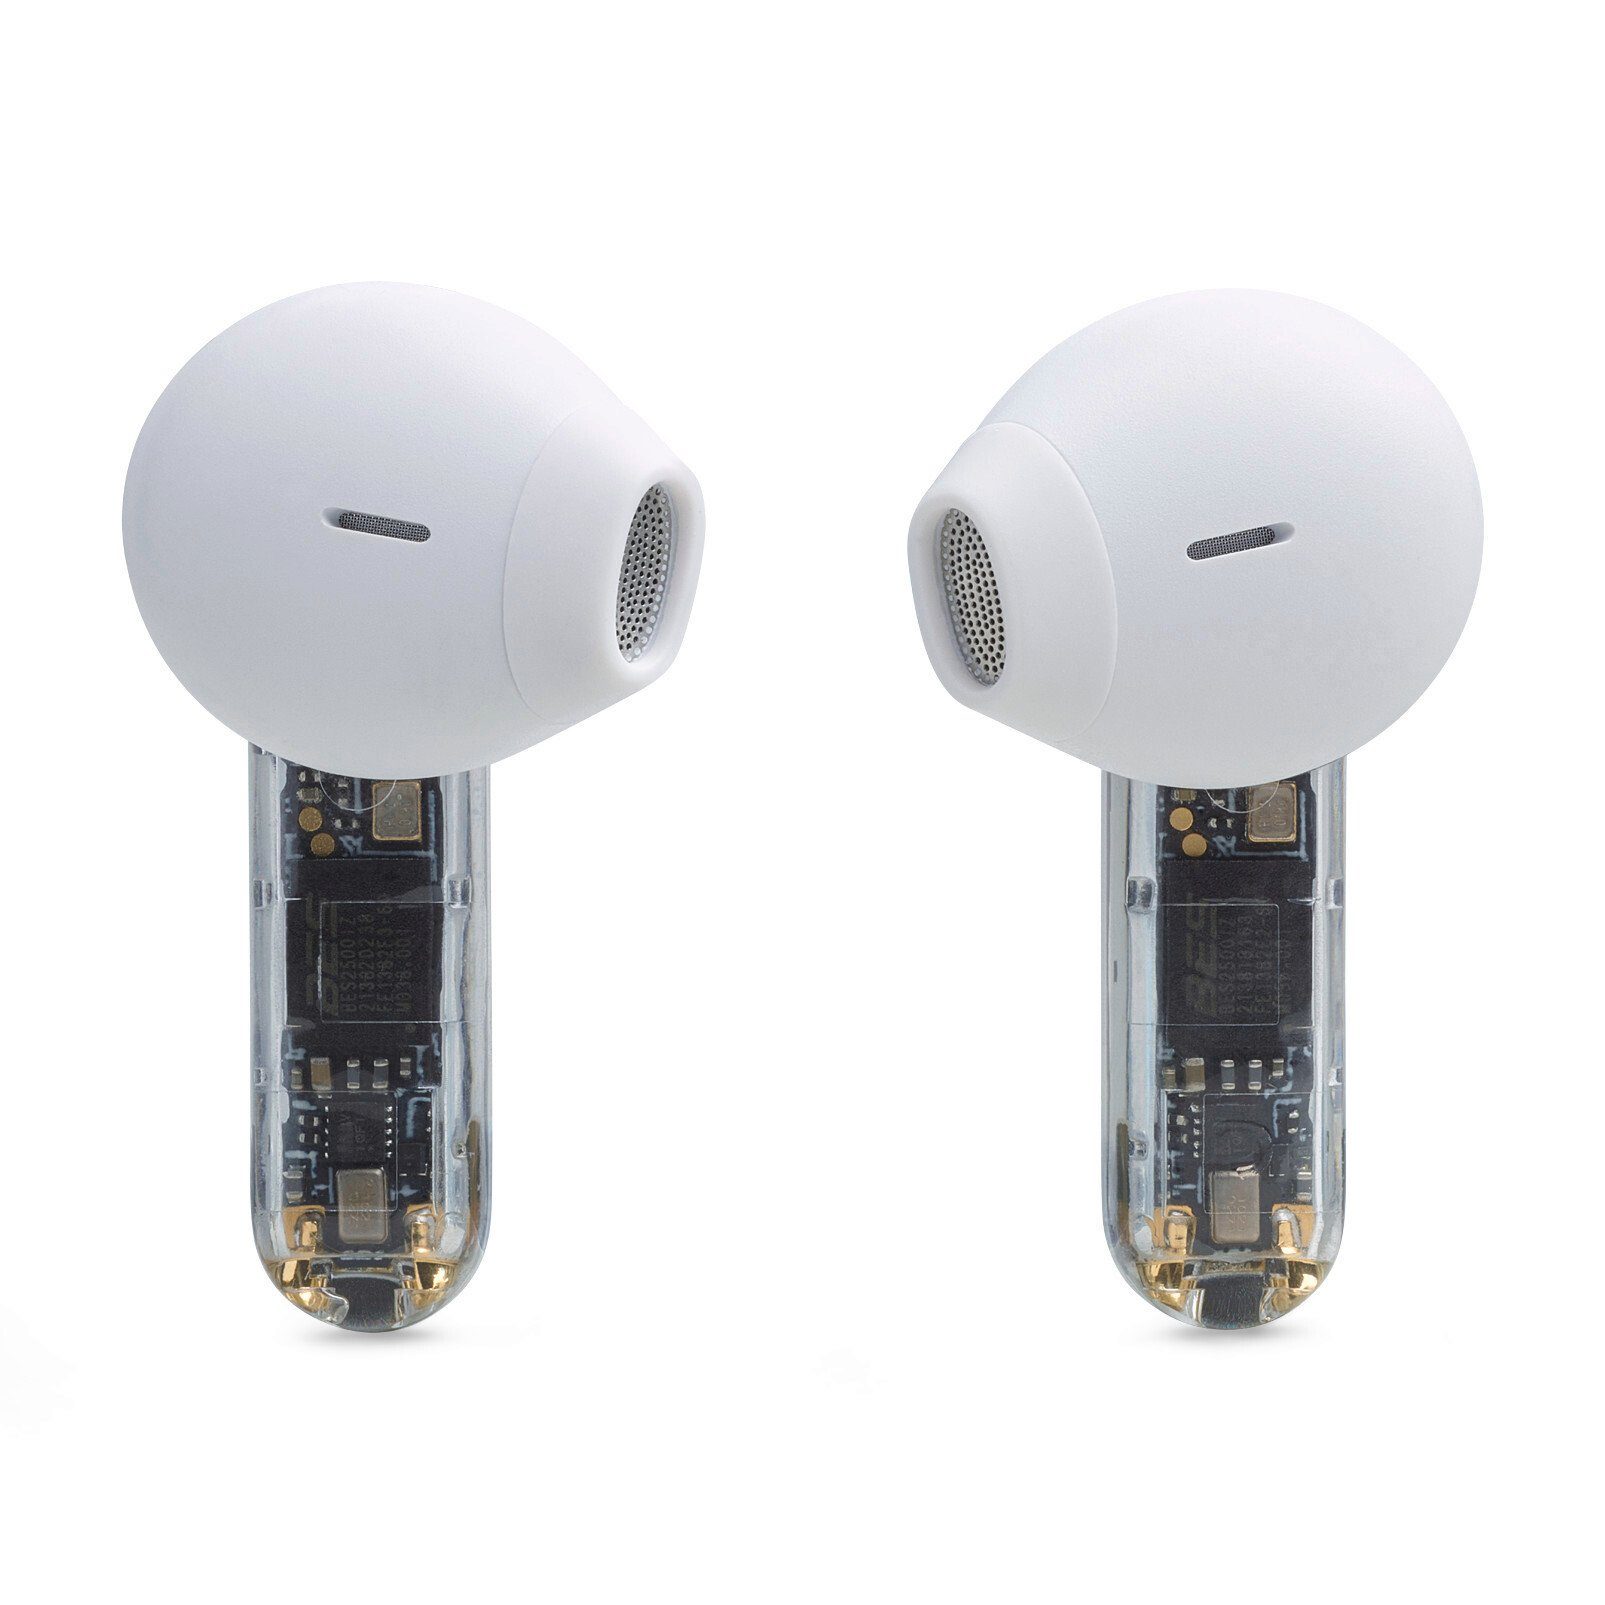 In-Ear-Kopfhörer Tune wireless Ghost- JBL weiß/transparent Flex Sonderedition